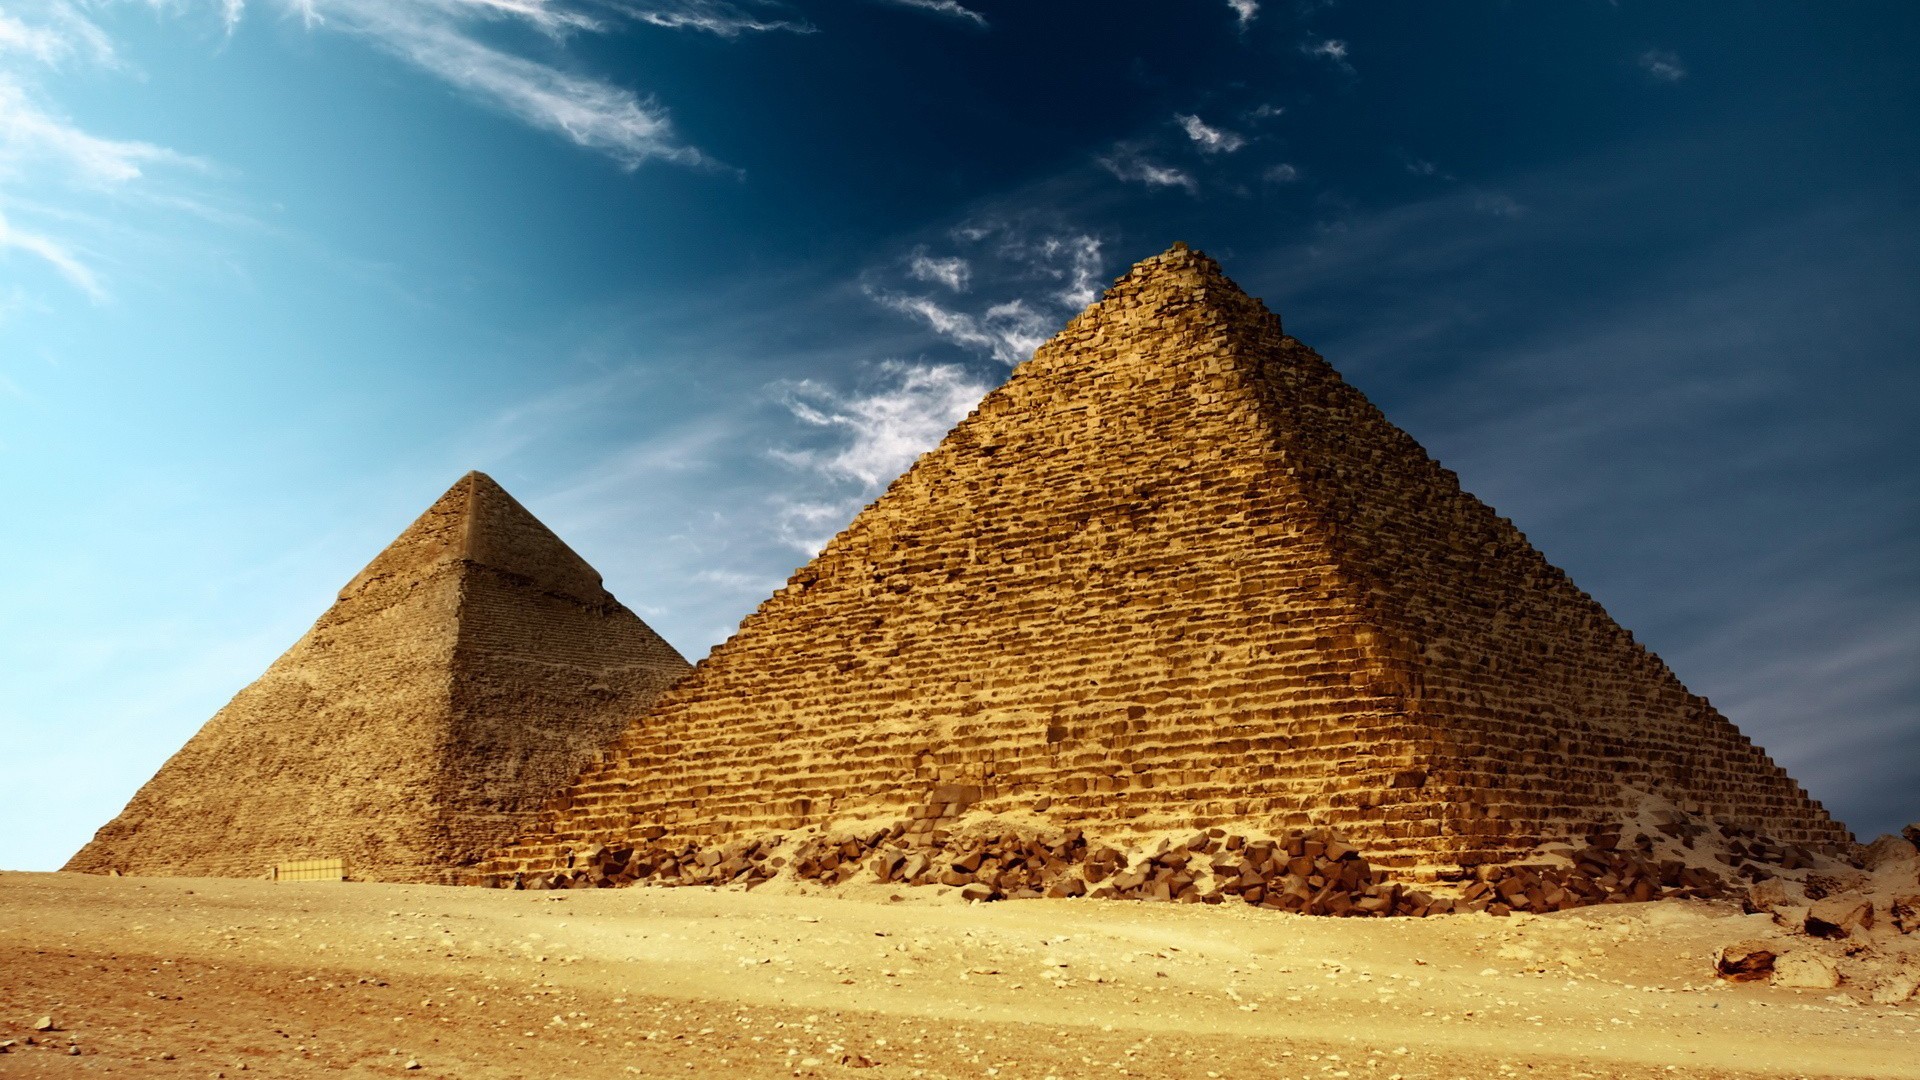 fond d'écran pyramide hd,pyramide,monument,histoire ancienne,merveilles du monde,ciel